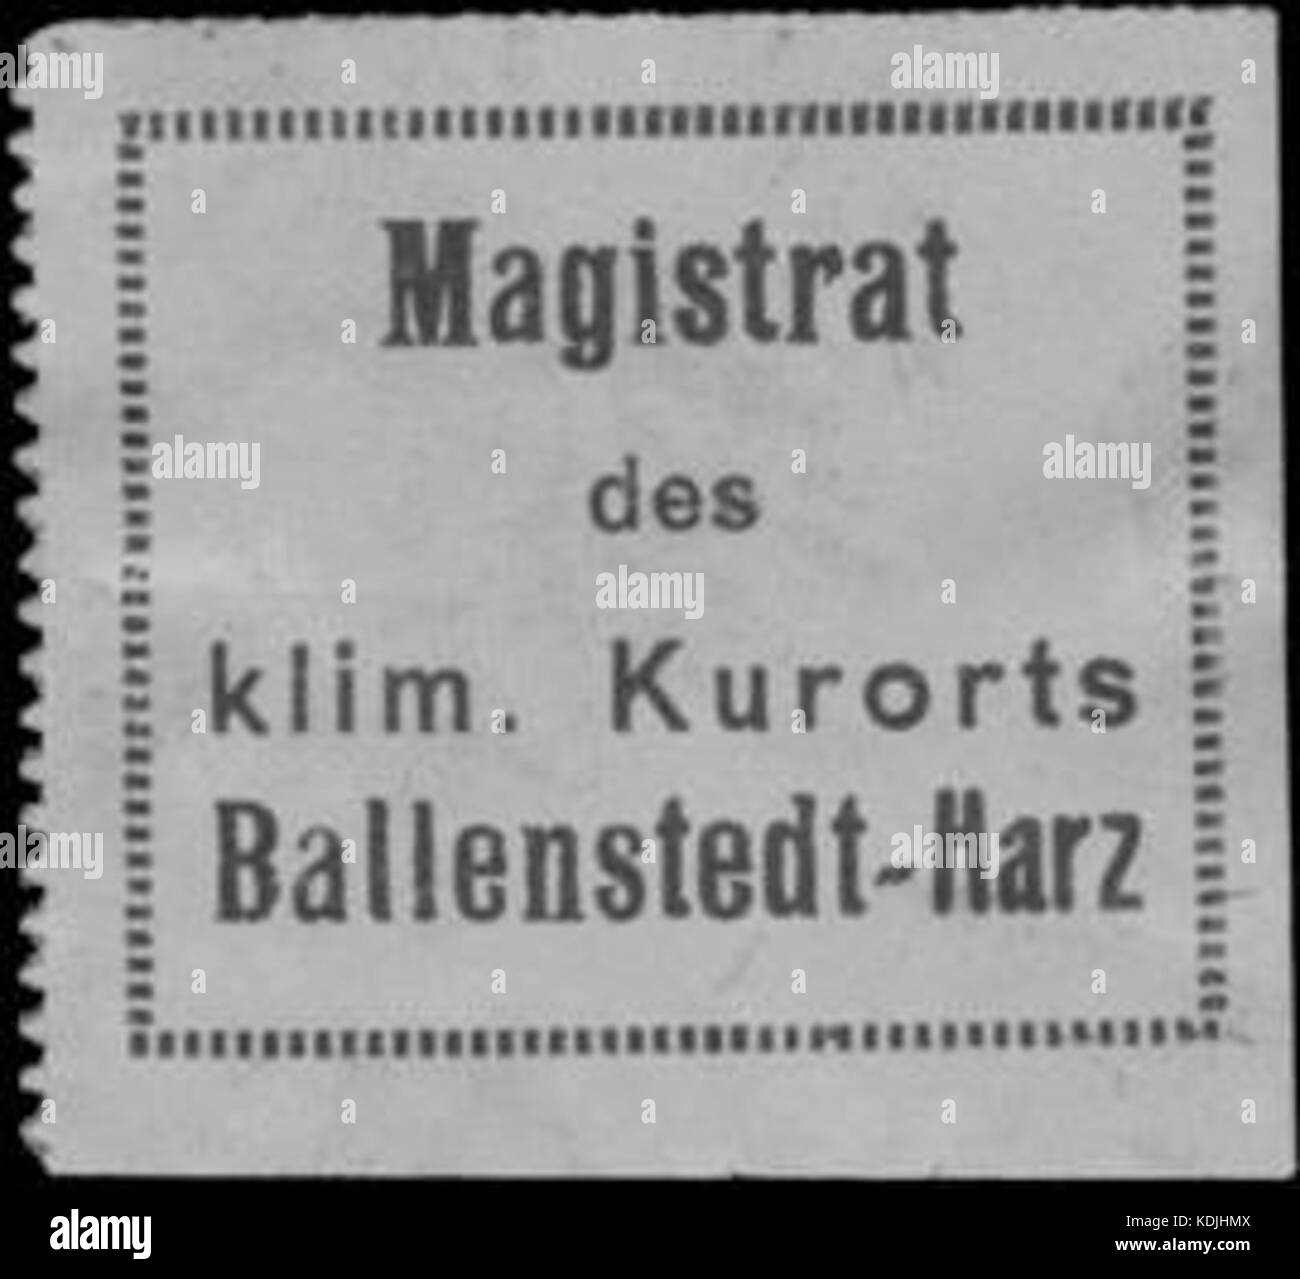 Siegelmarke Magistrat des klim. Kurorts Ballenstedt Harz W0383433 Foto Stock